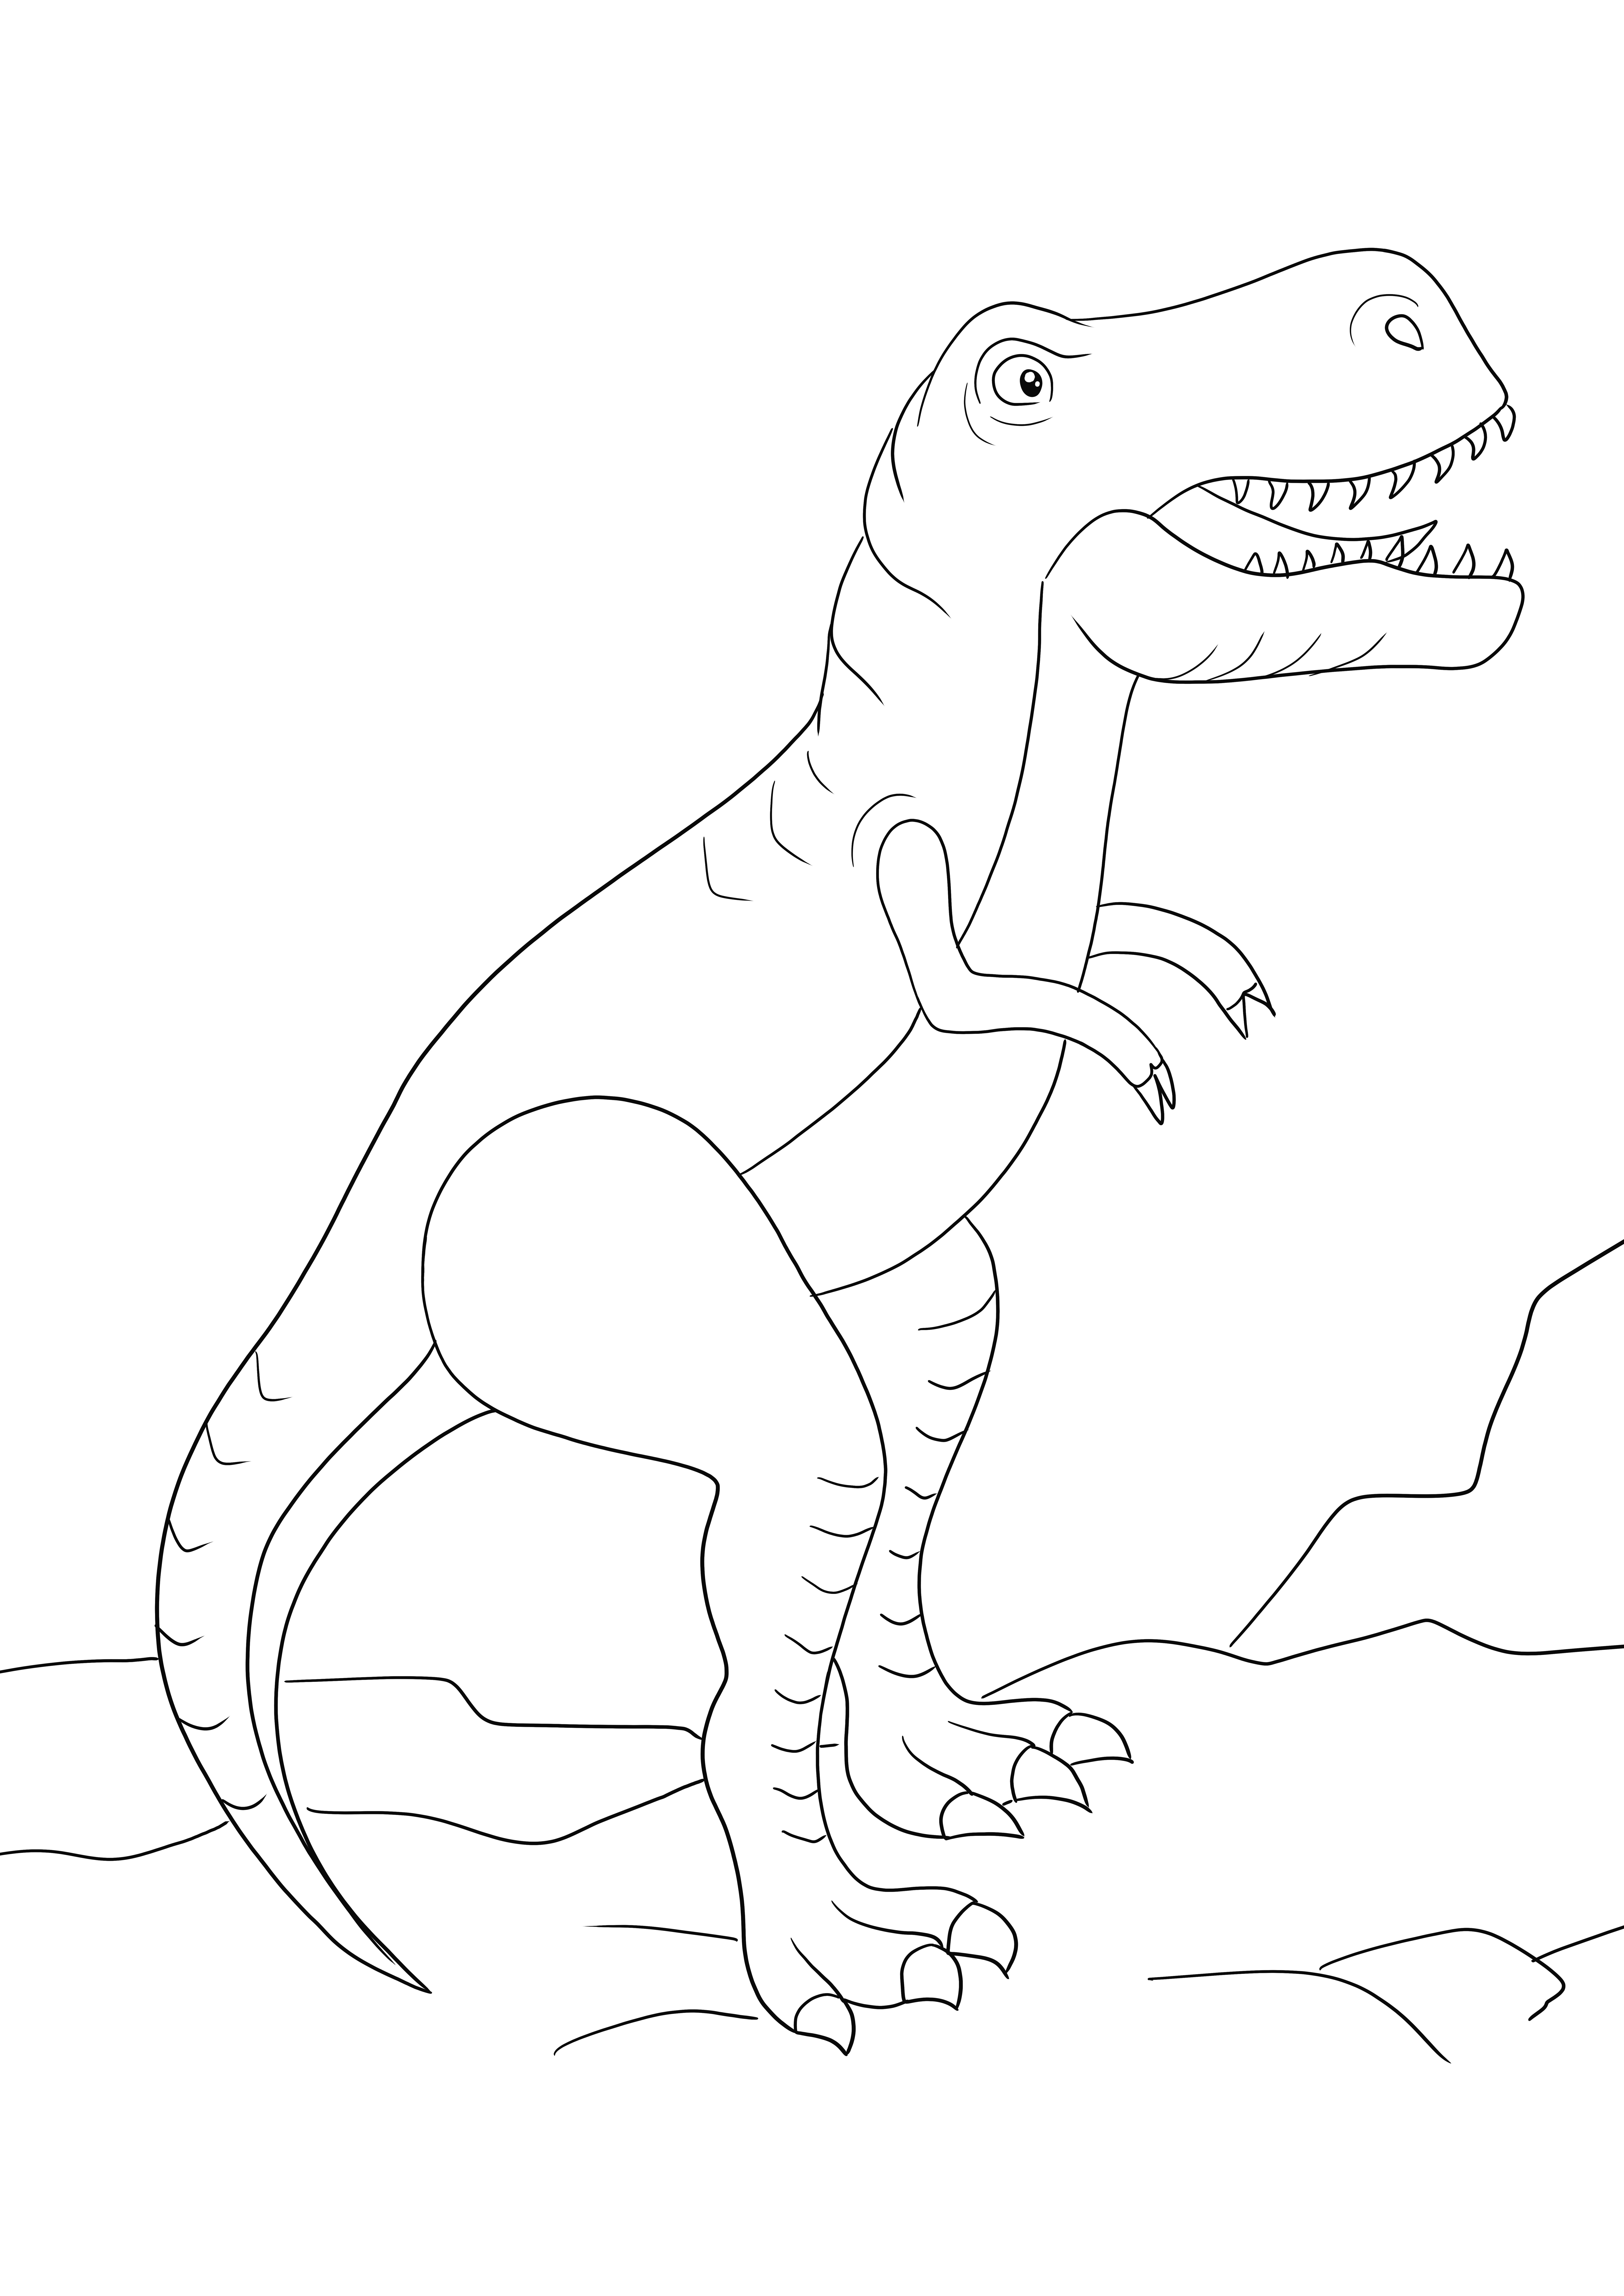 Un coloriage à télécharger d'un gros T-Rex gratuitement et colorié